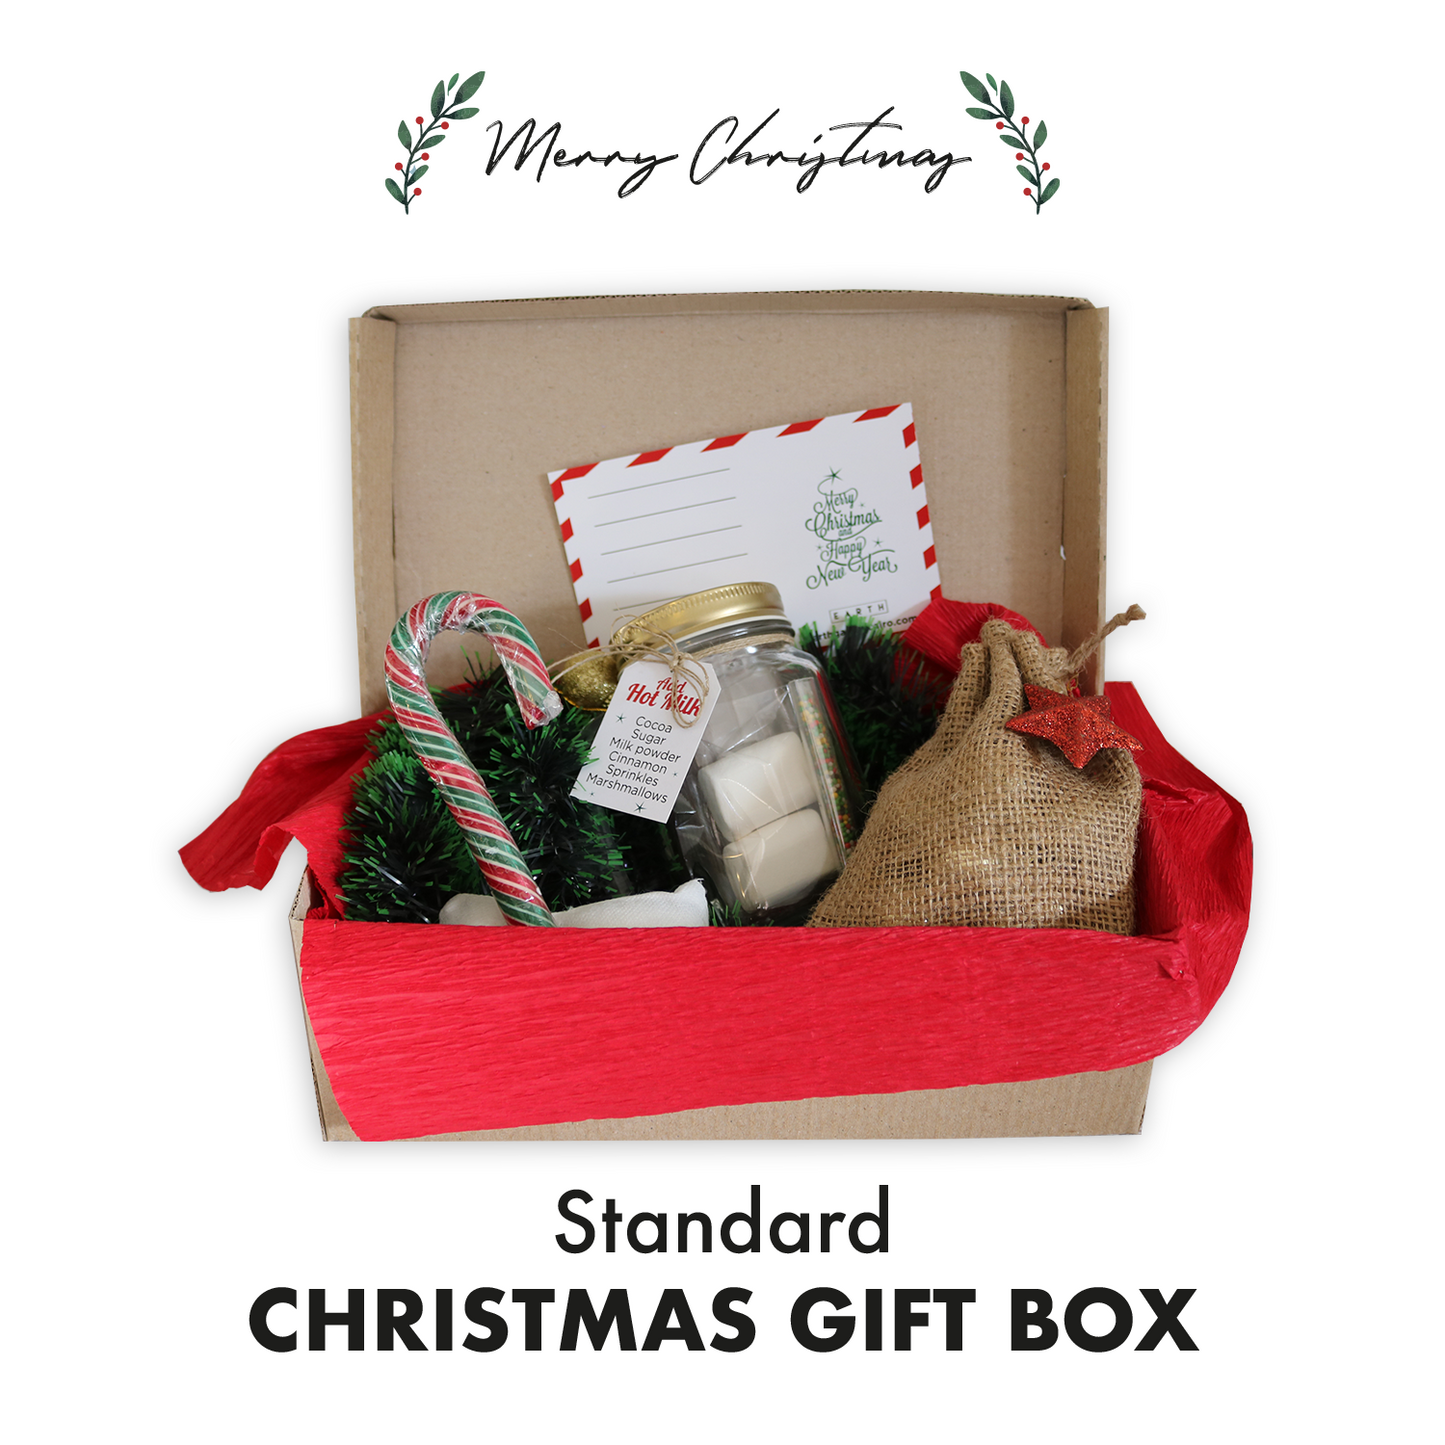 Standard Christmas Gift Box